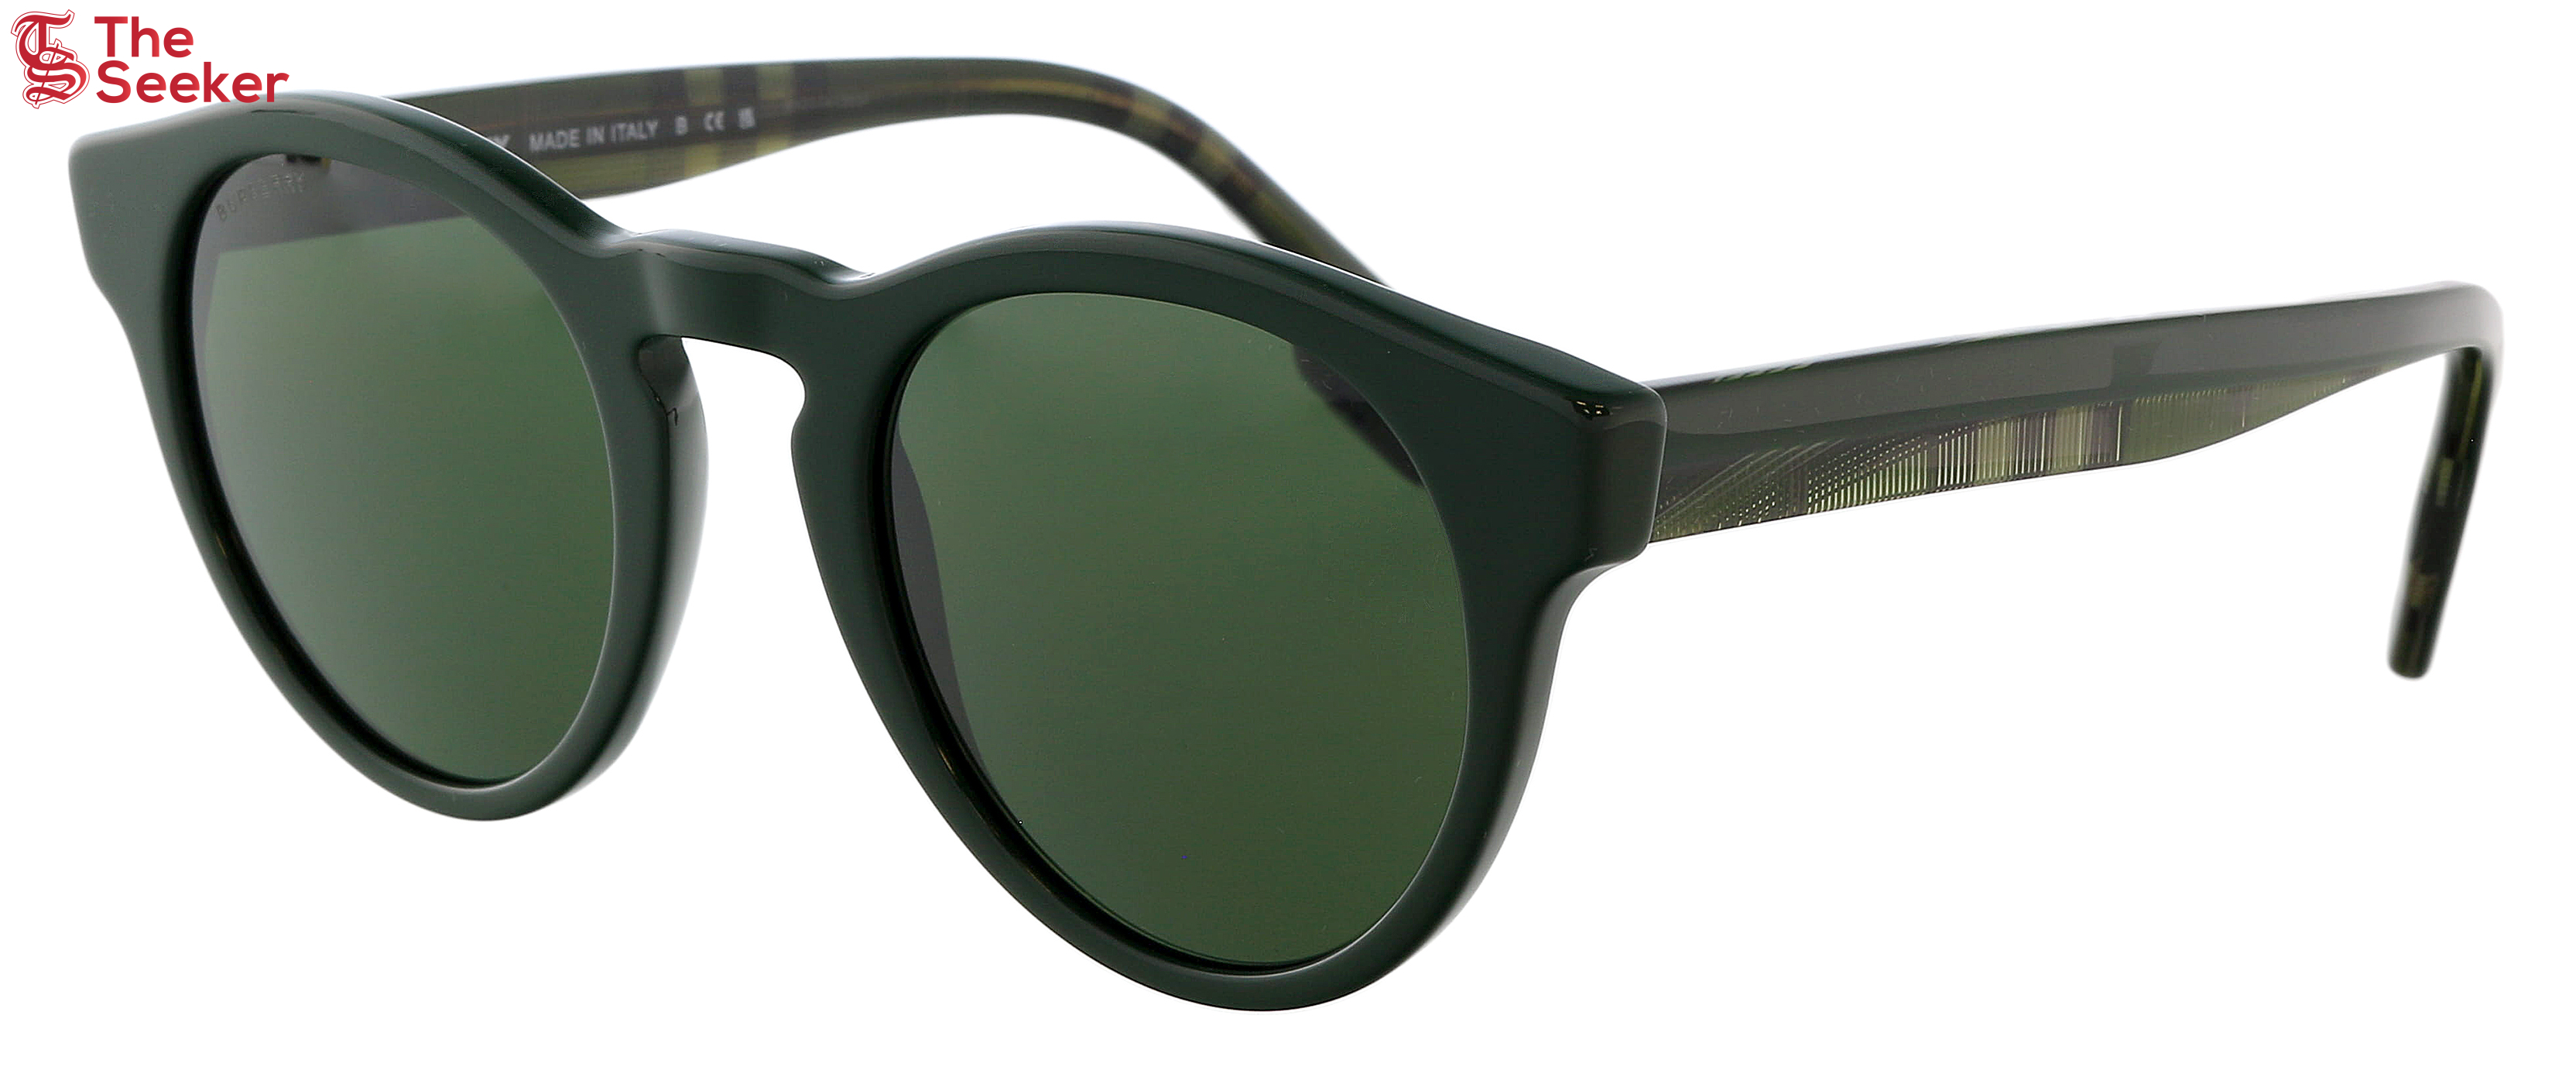 Burberry Round Sunglasses Dark Green (0BE4359 39977149 Reid)